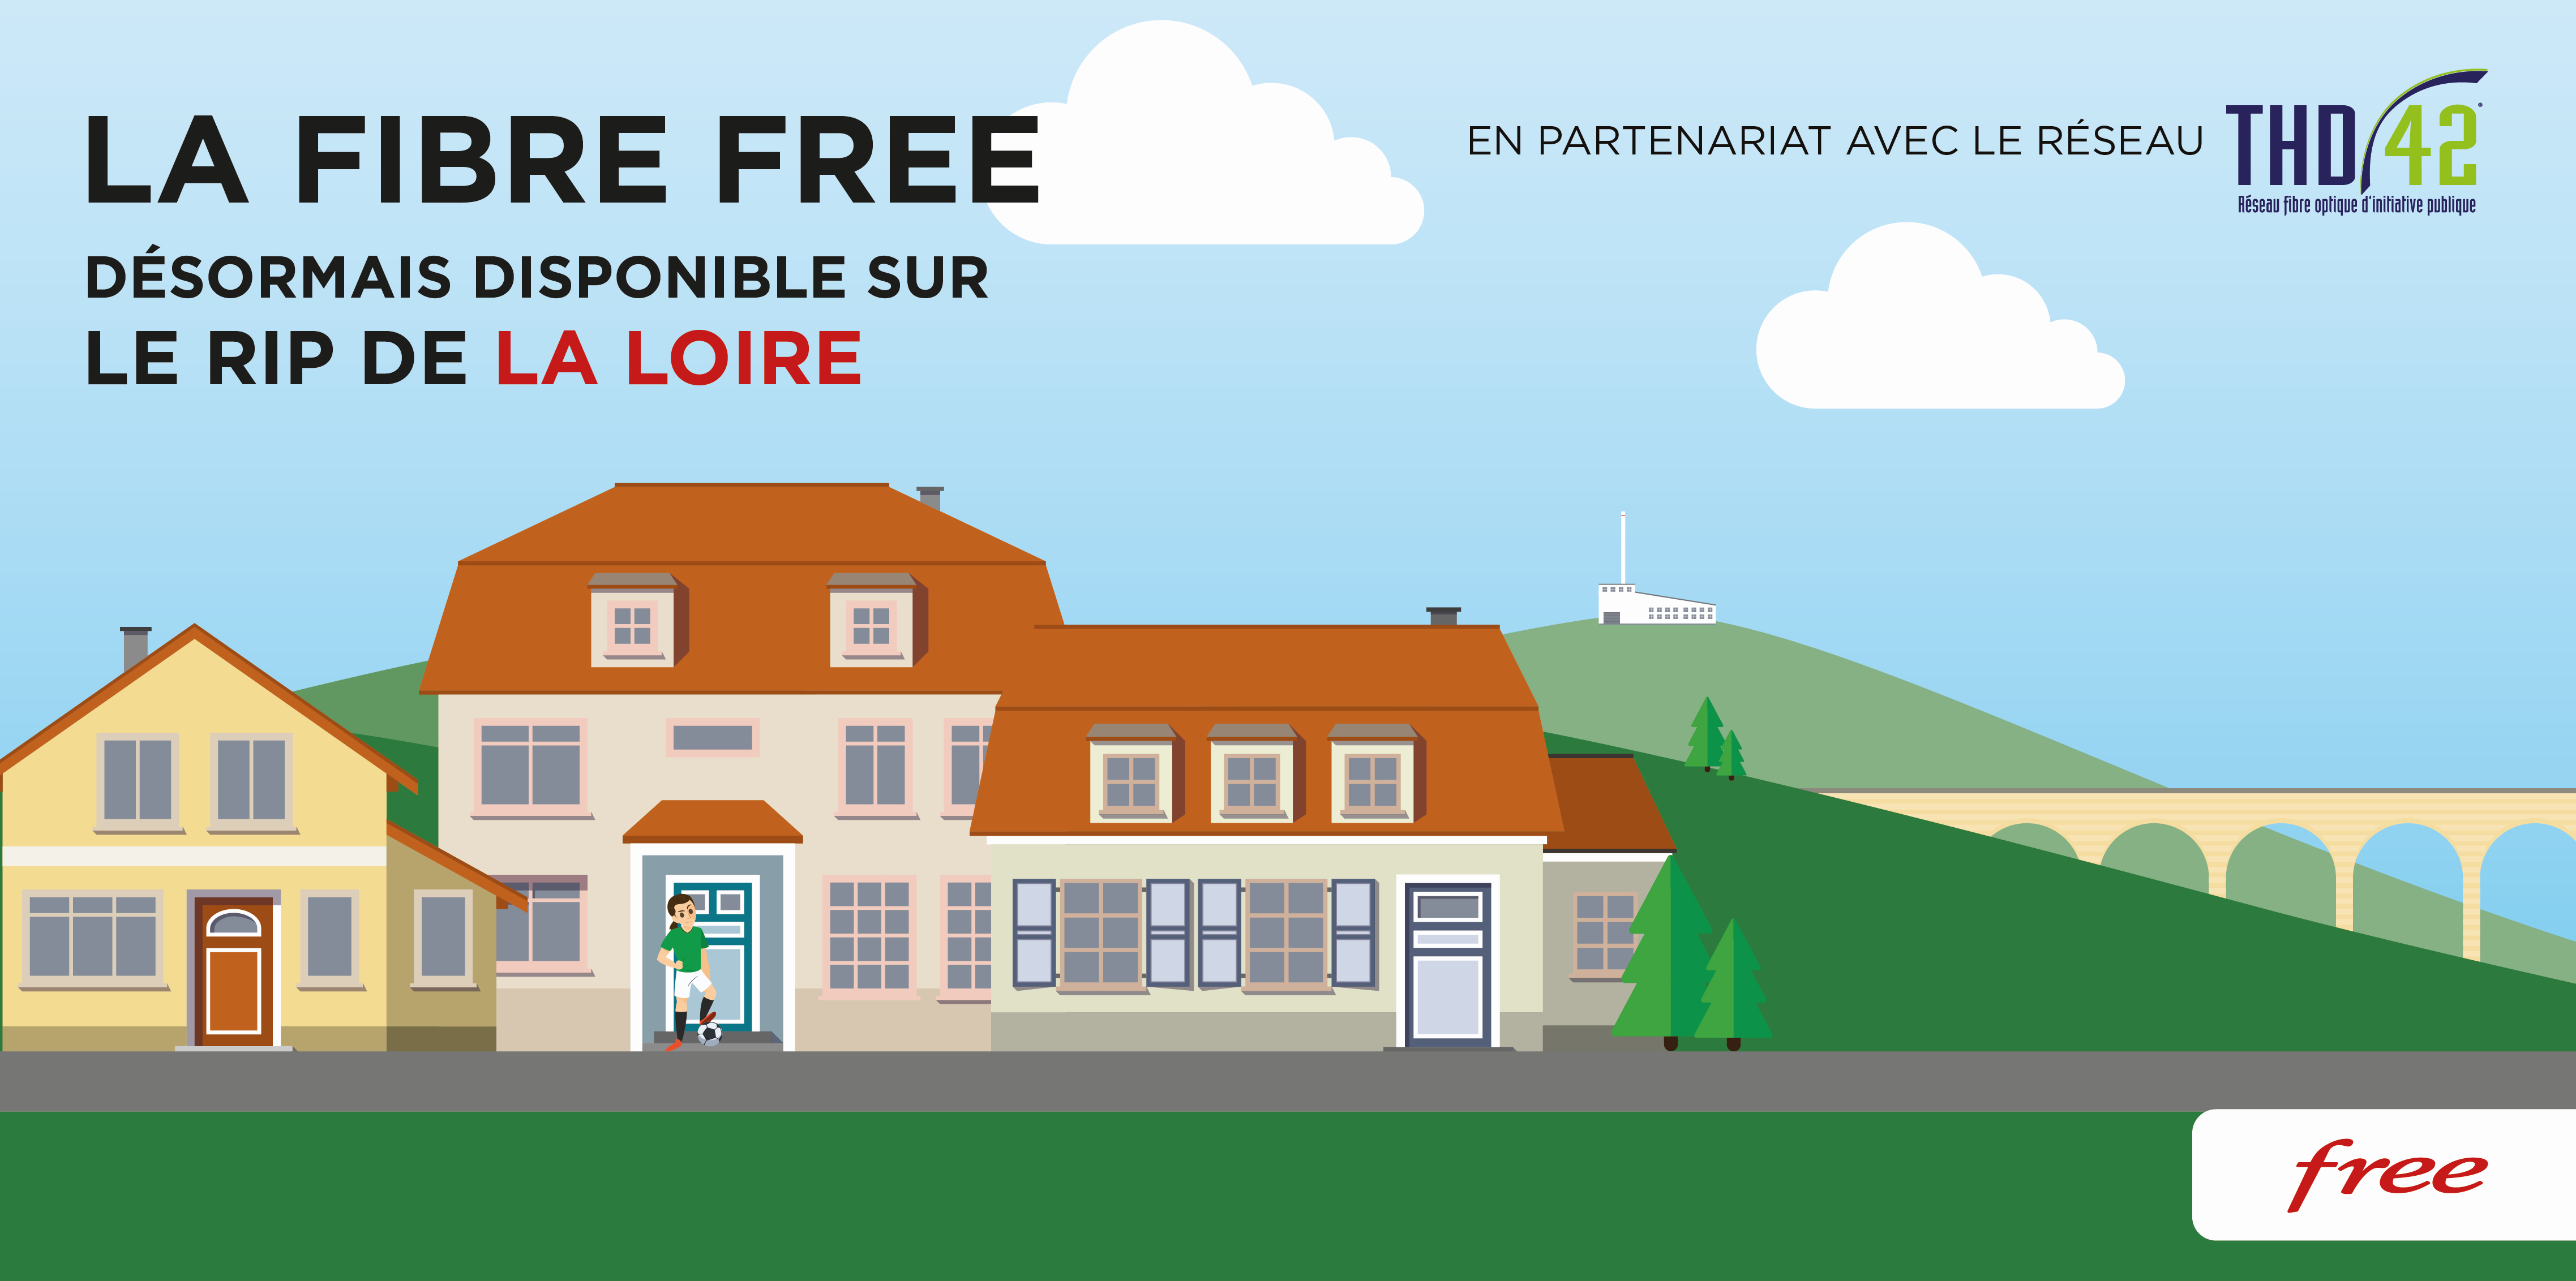 La Fibre Free désormais disponible sur le RIP de la Loire